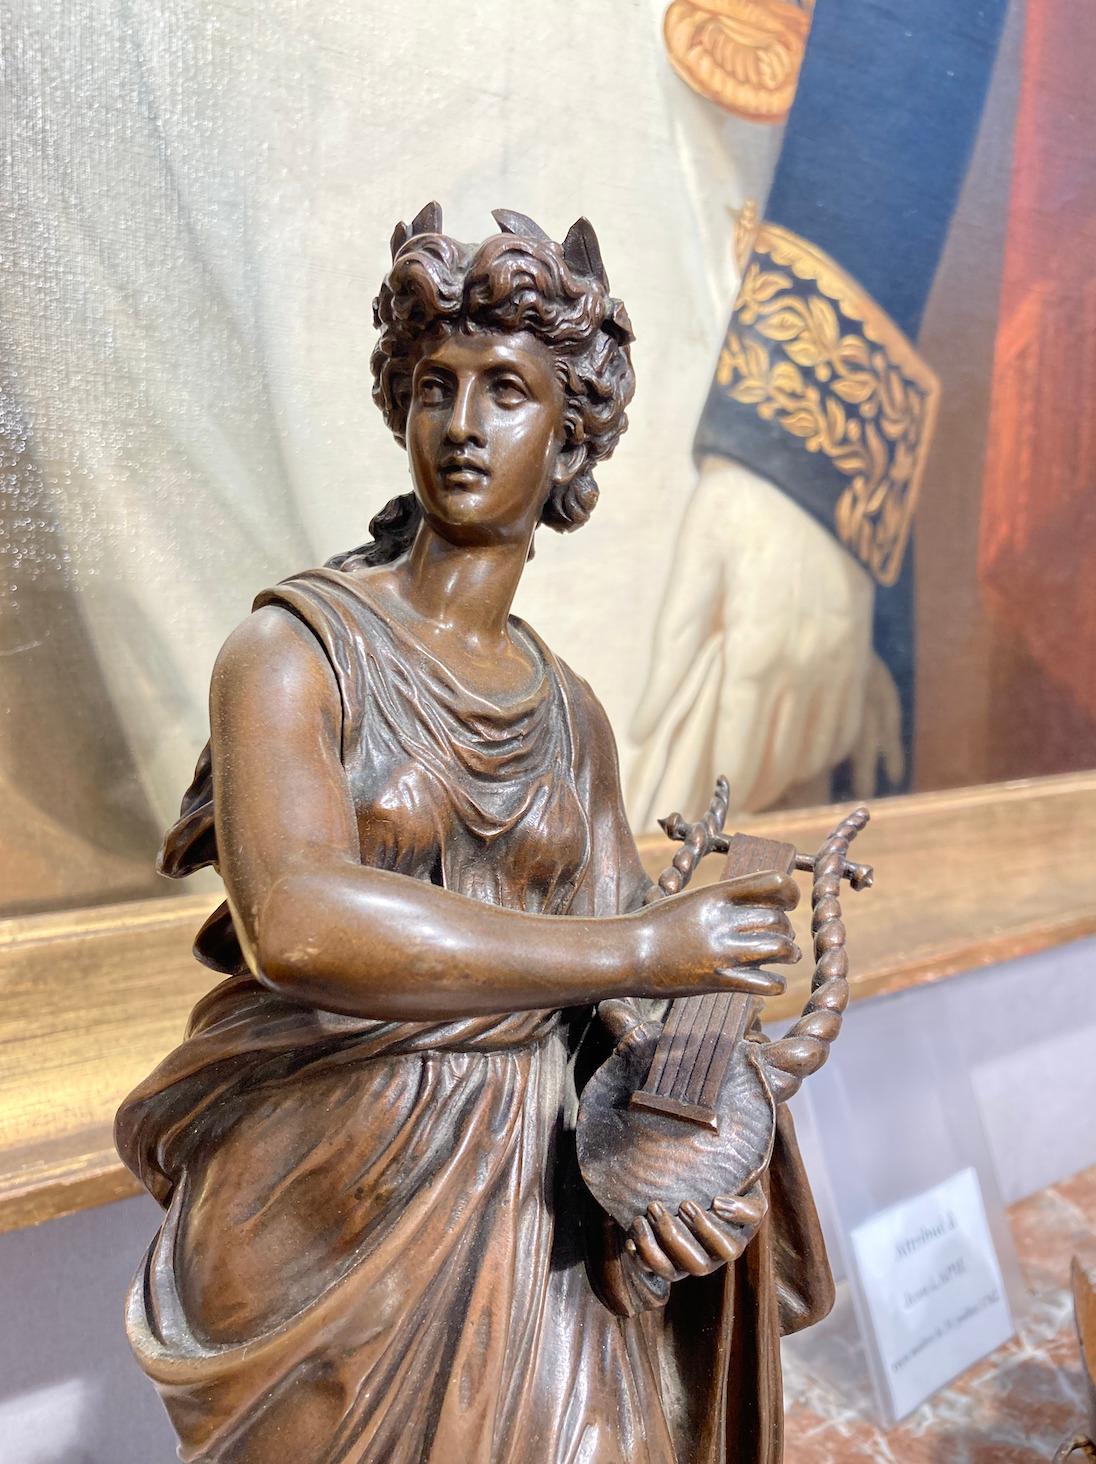 Charmant bronze signé Mathurin Moreau. Représentation de la musique, cette femme au drapé délicat, coiffée d'une couronne de laurier tient dans ses mains une lyre. 

Signé sur la Base Moreau. 